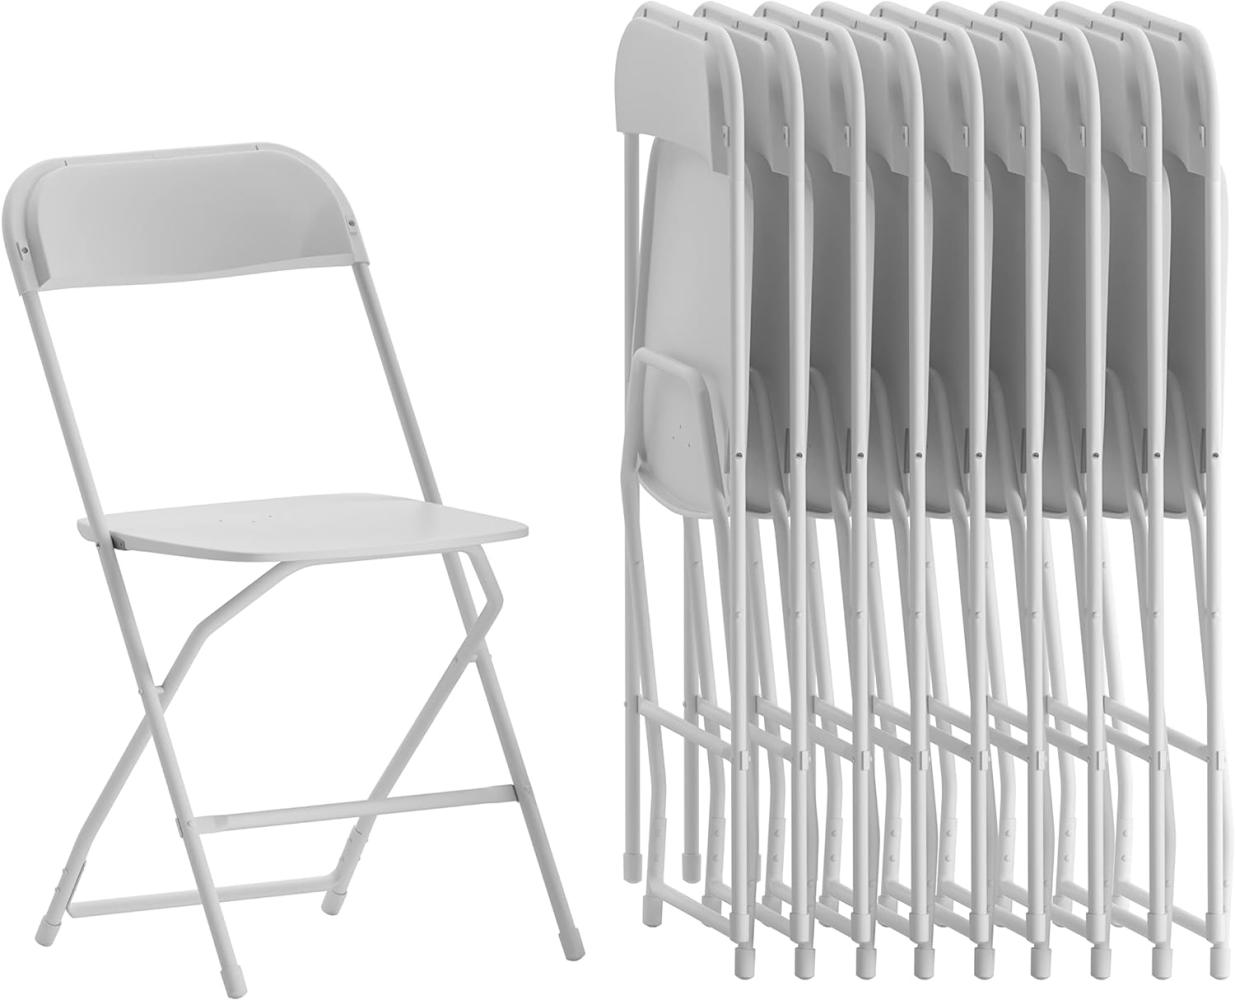 Flash Furniture Klappstuhl HERCULES aus Kunststoff – Leichter Stuhl zum Klappen für Gäste oder Veranstaltungen – Praktischer Küchenstuhl auch für draußen geeignet – 10er-Set – Weiß Bild 1